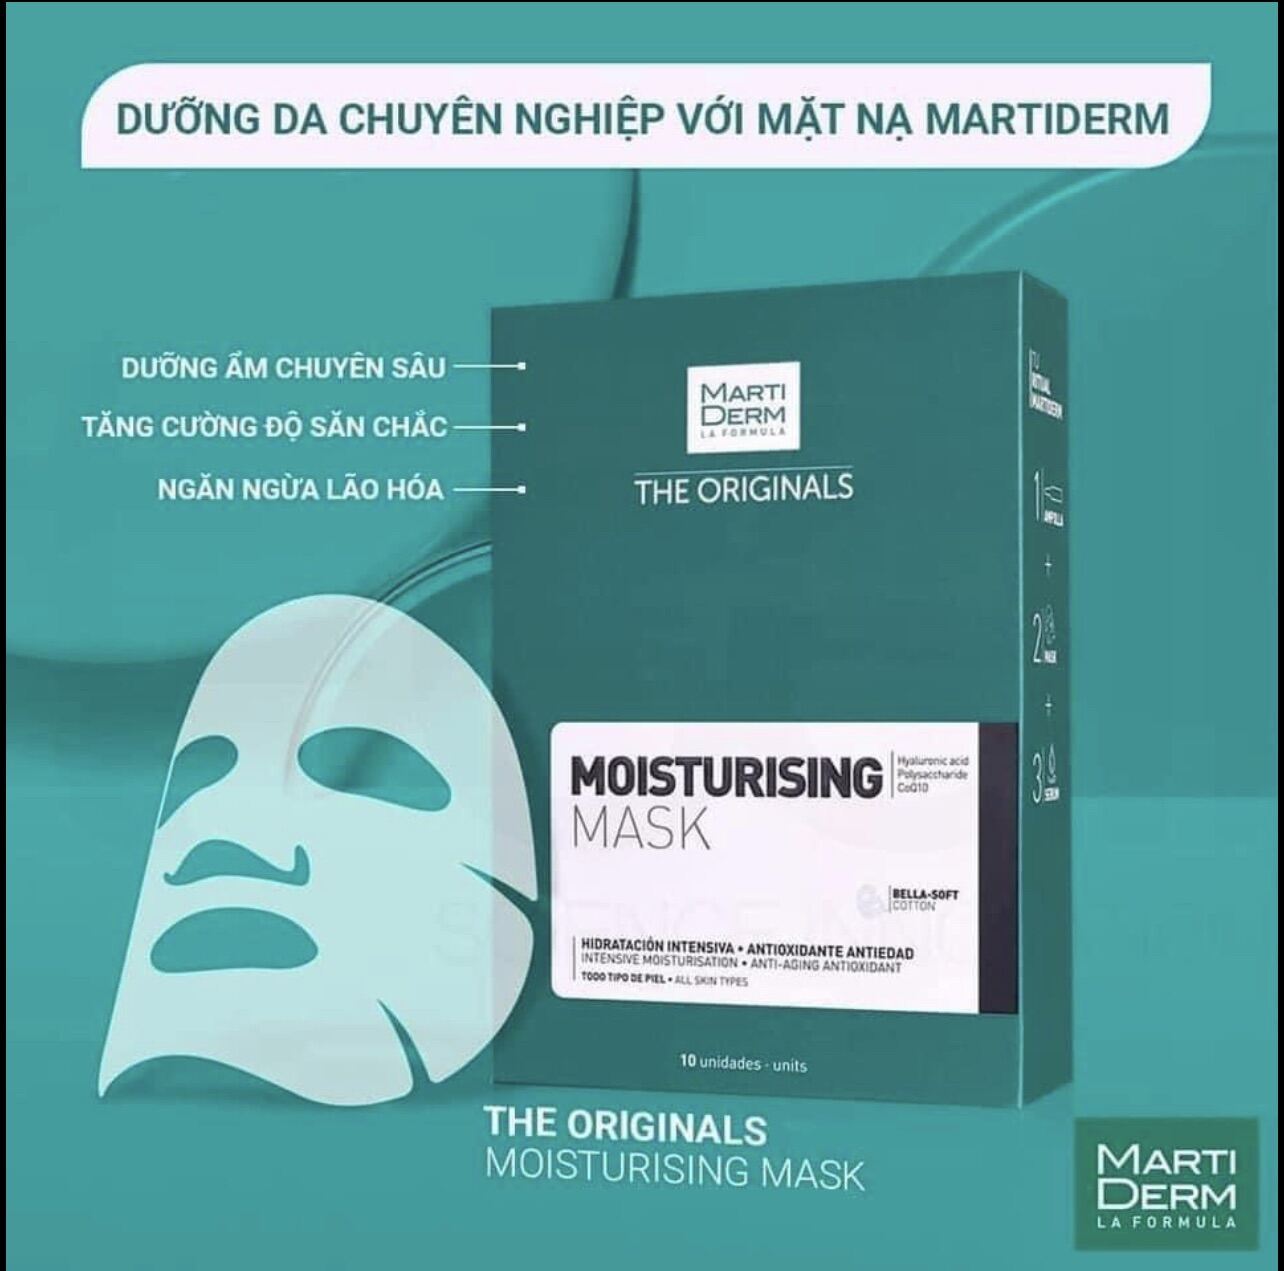 [HÀNG XÁCH TAY]Mặt nạ dưỡng ẩm da - MartiDerm The Originals Moisturising Mask (25ml x 1 miếng) date T11/23 và T10/24